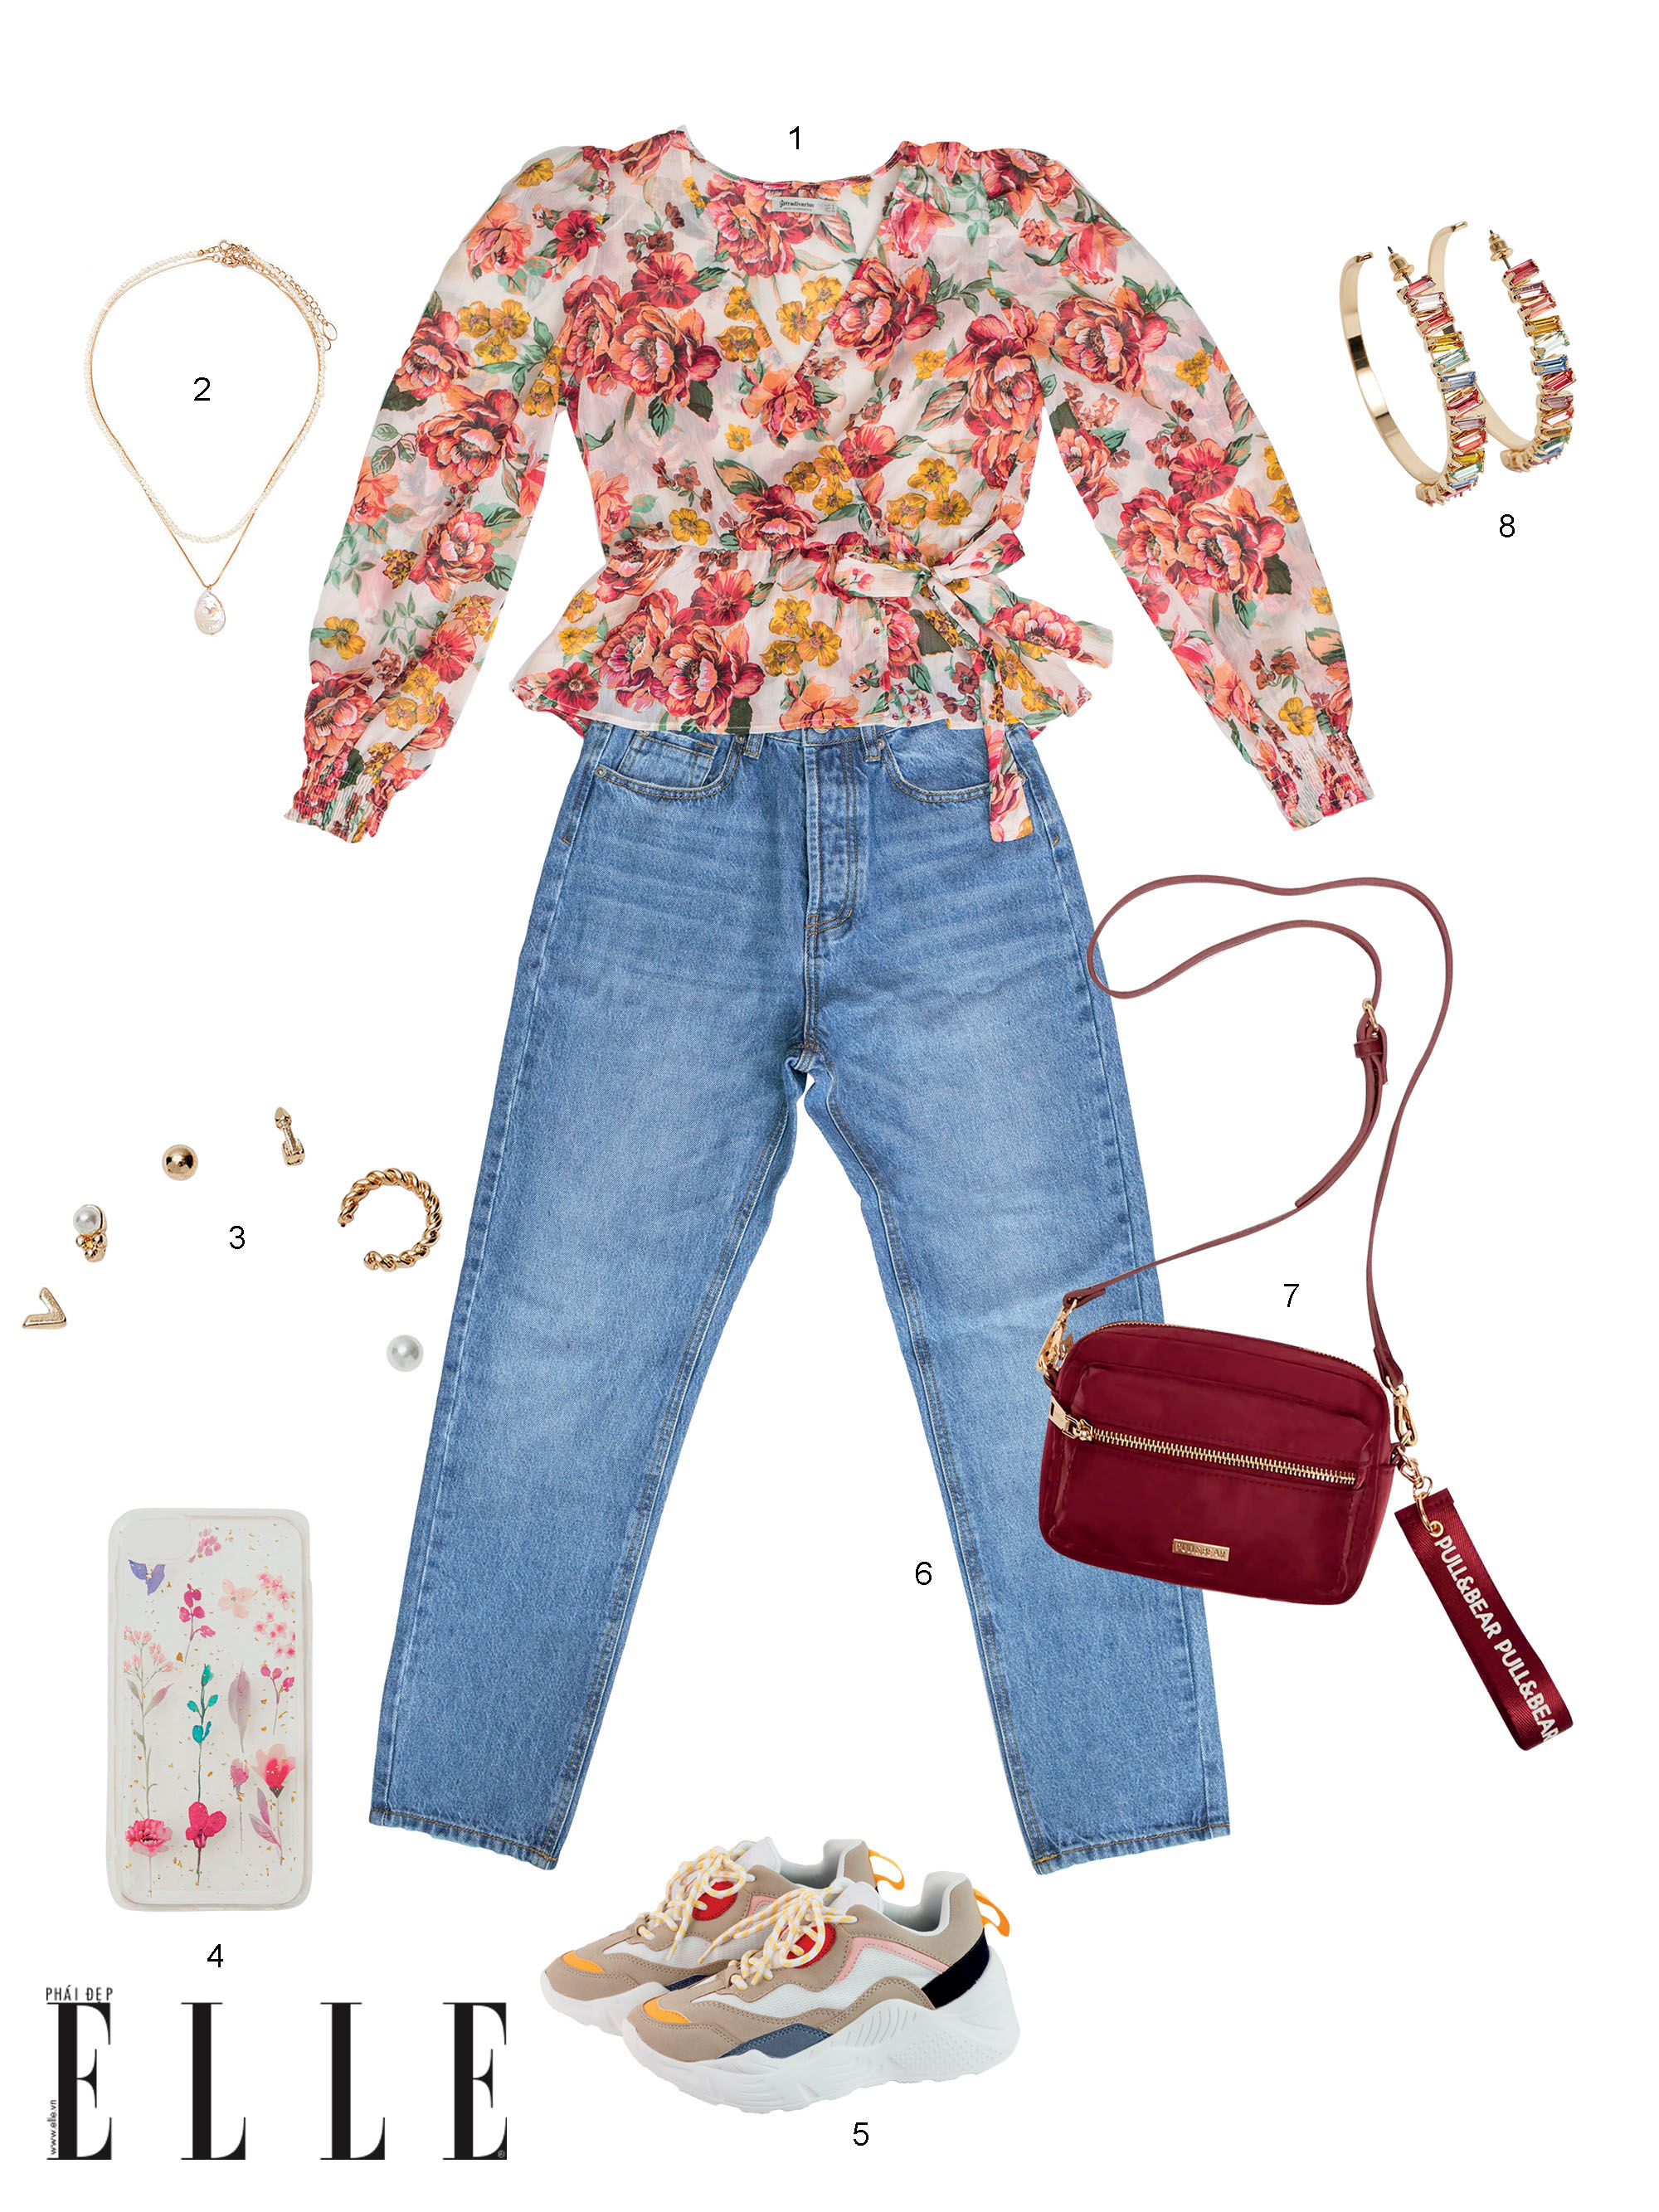 phối đồ với áo buộc eo họa tiết hoa và quần jeans